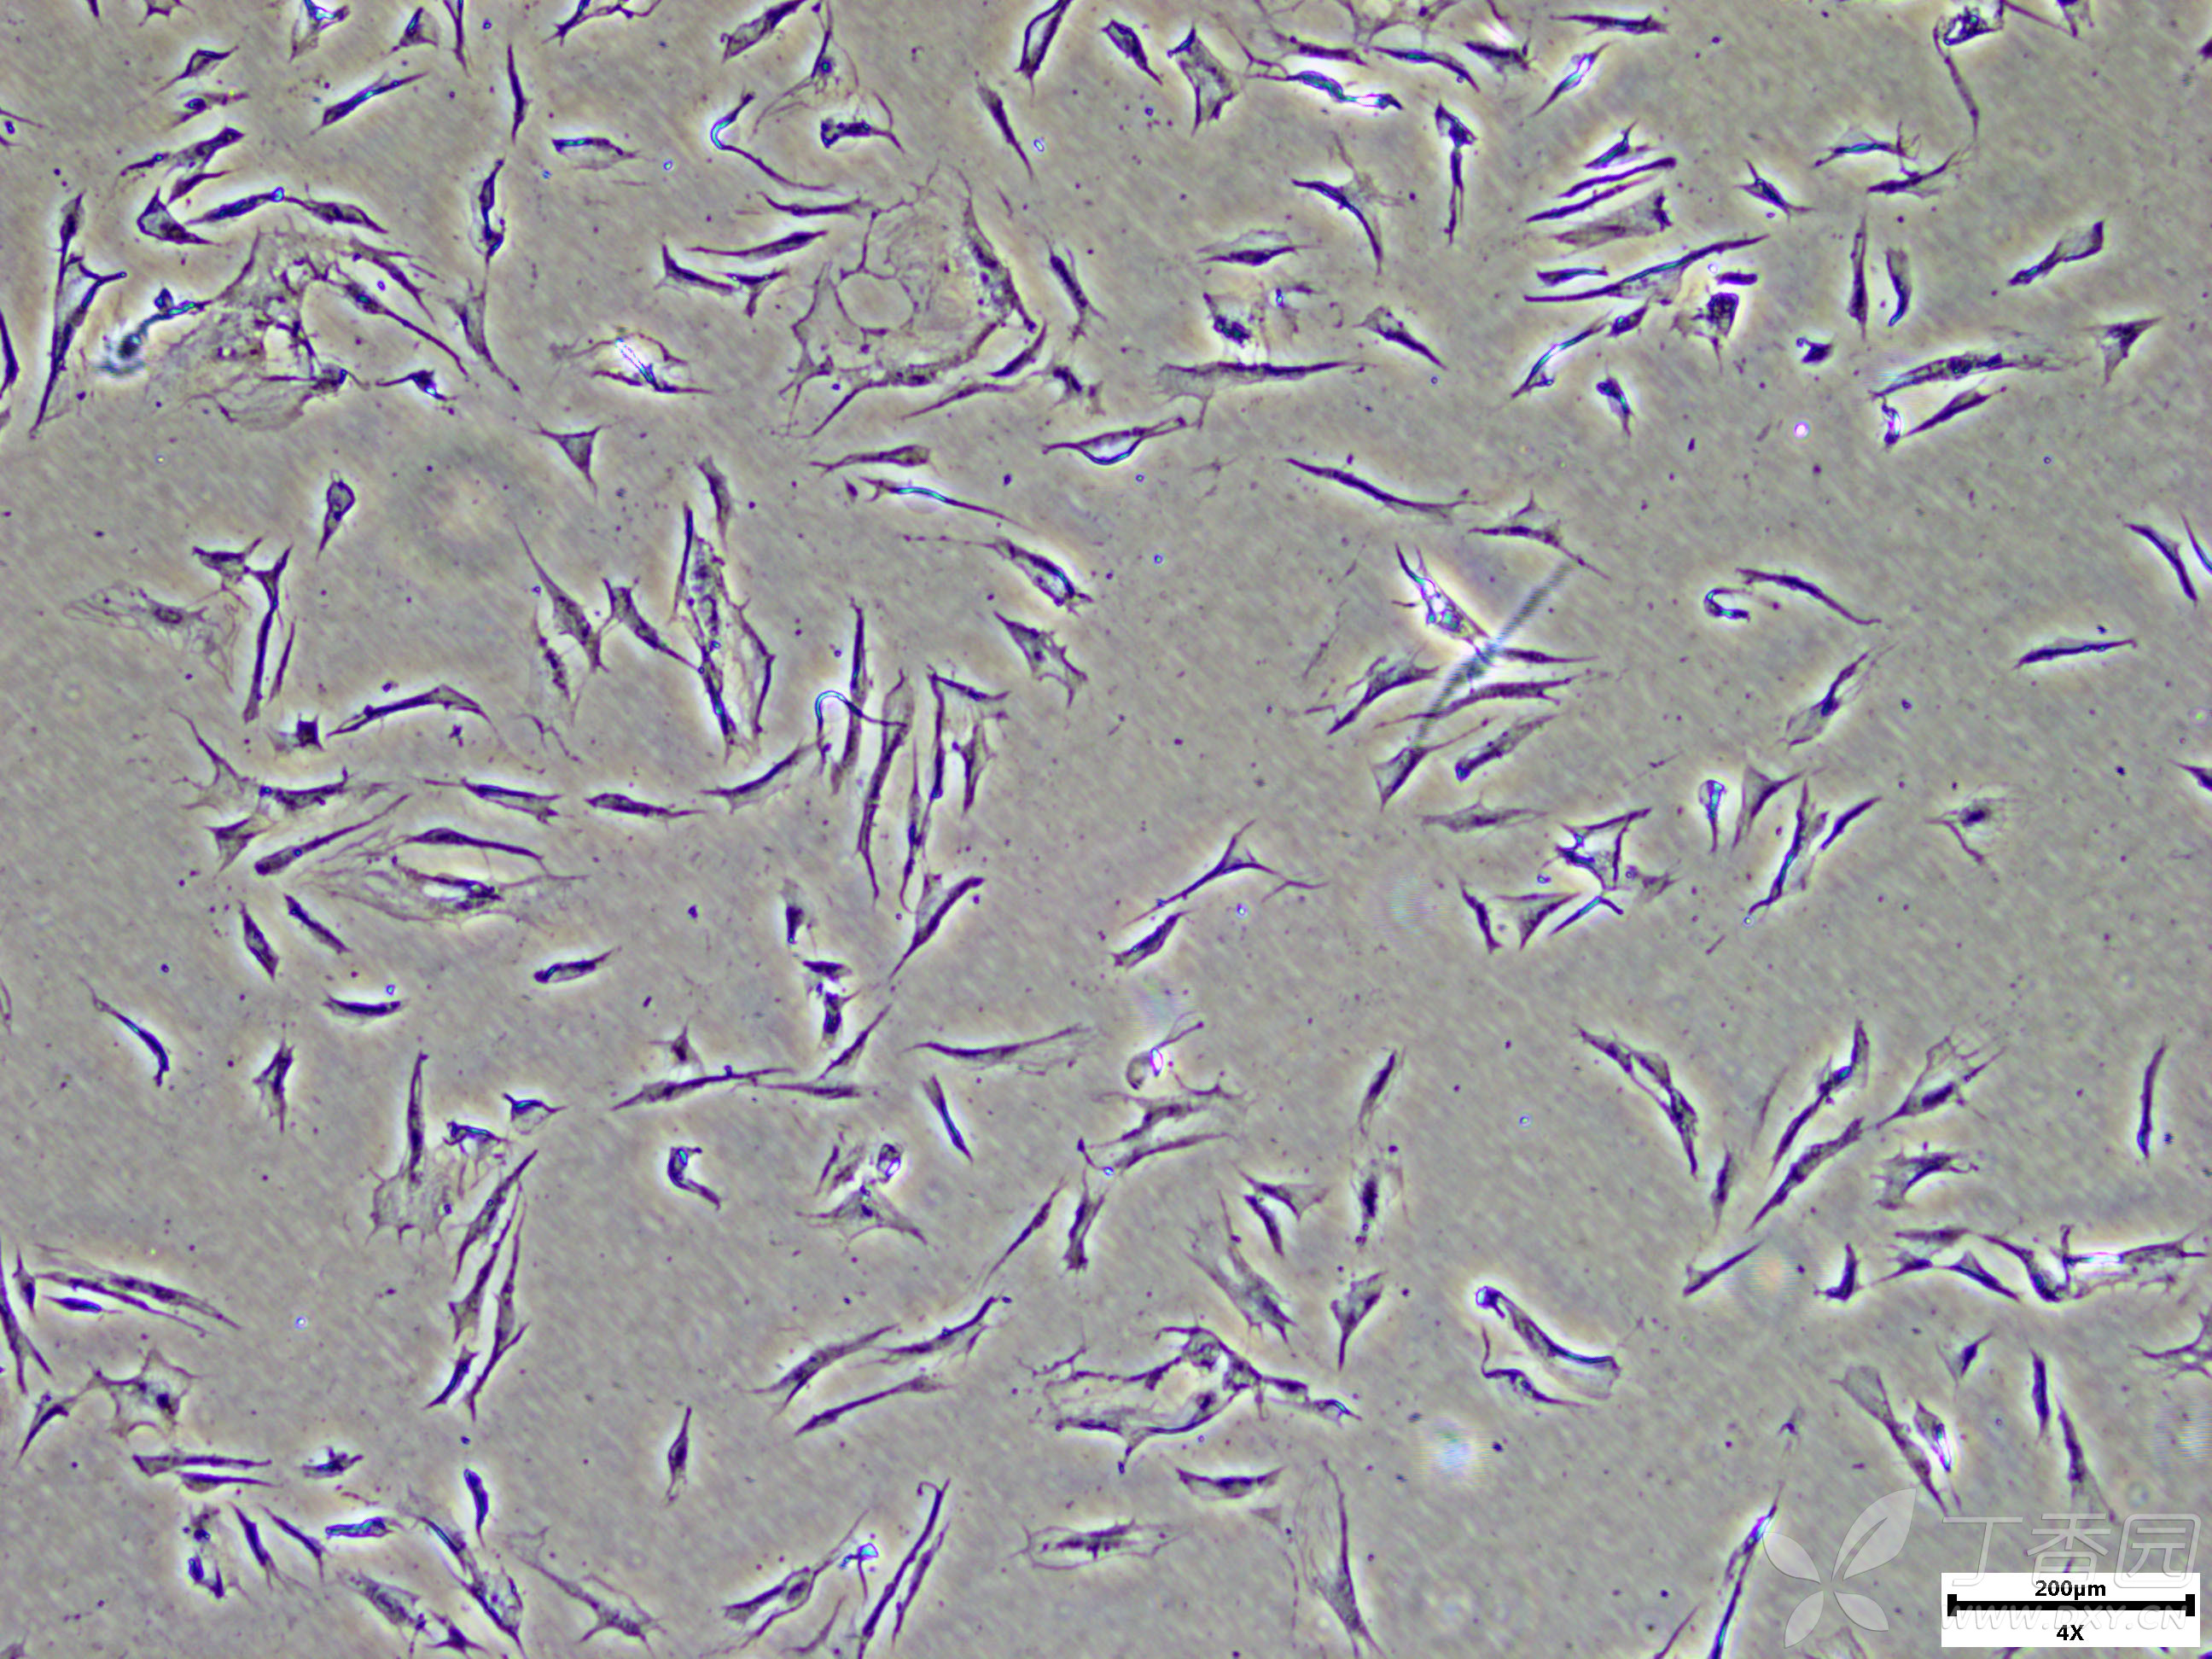 3形态异常的大鼠成纤维细胞